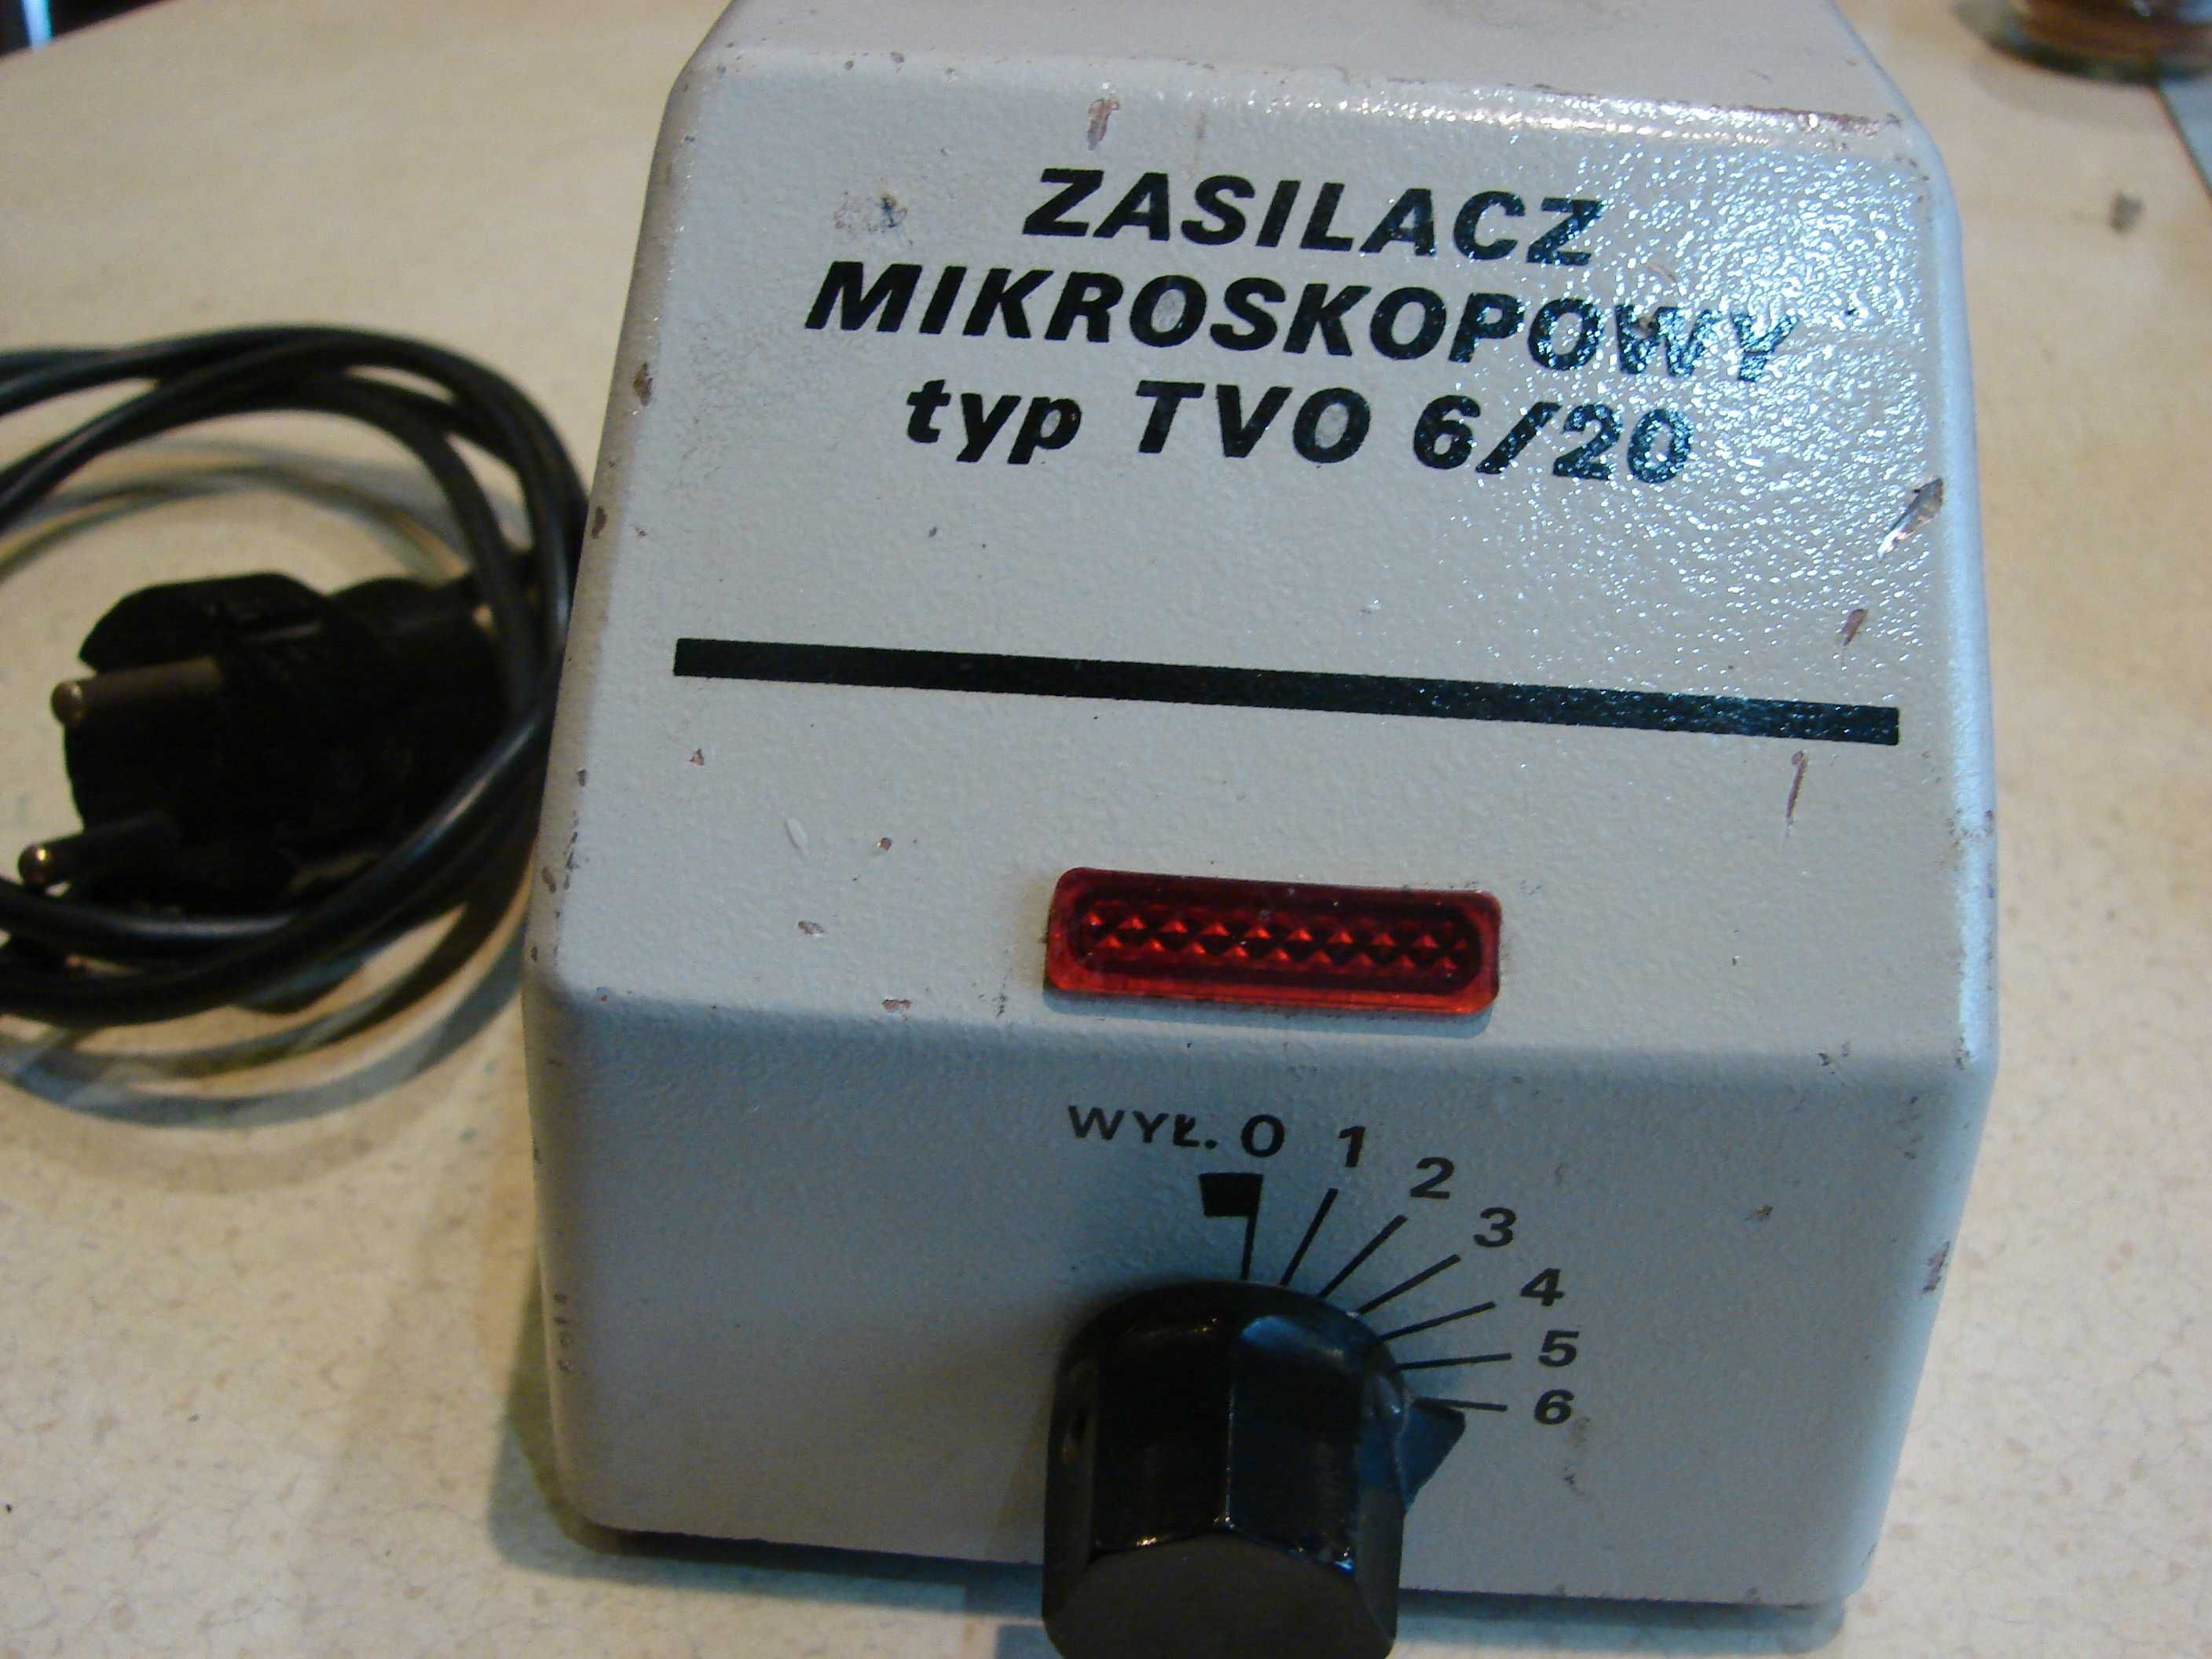 Zasilacz mikroskopowy typTVO 6/20 reg.nap. 2V-7V AC autotransformator